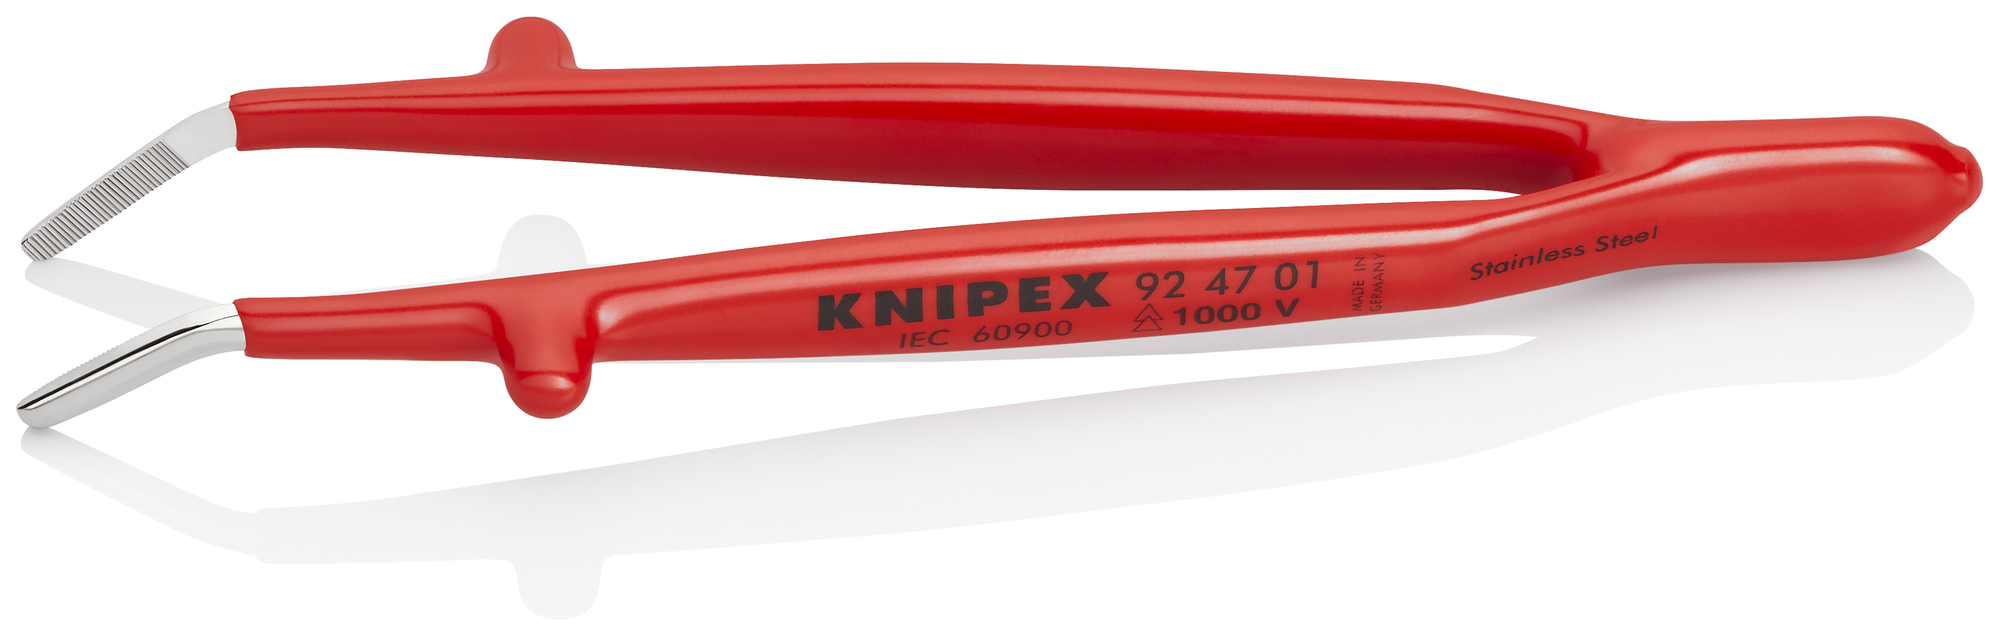 KNIPEX Pinzeta univerzálna izolovaná 1000V 924701